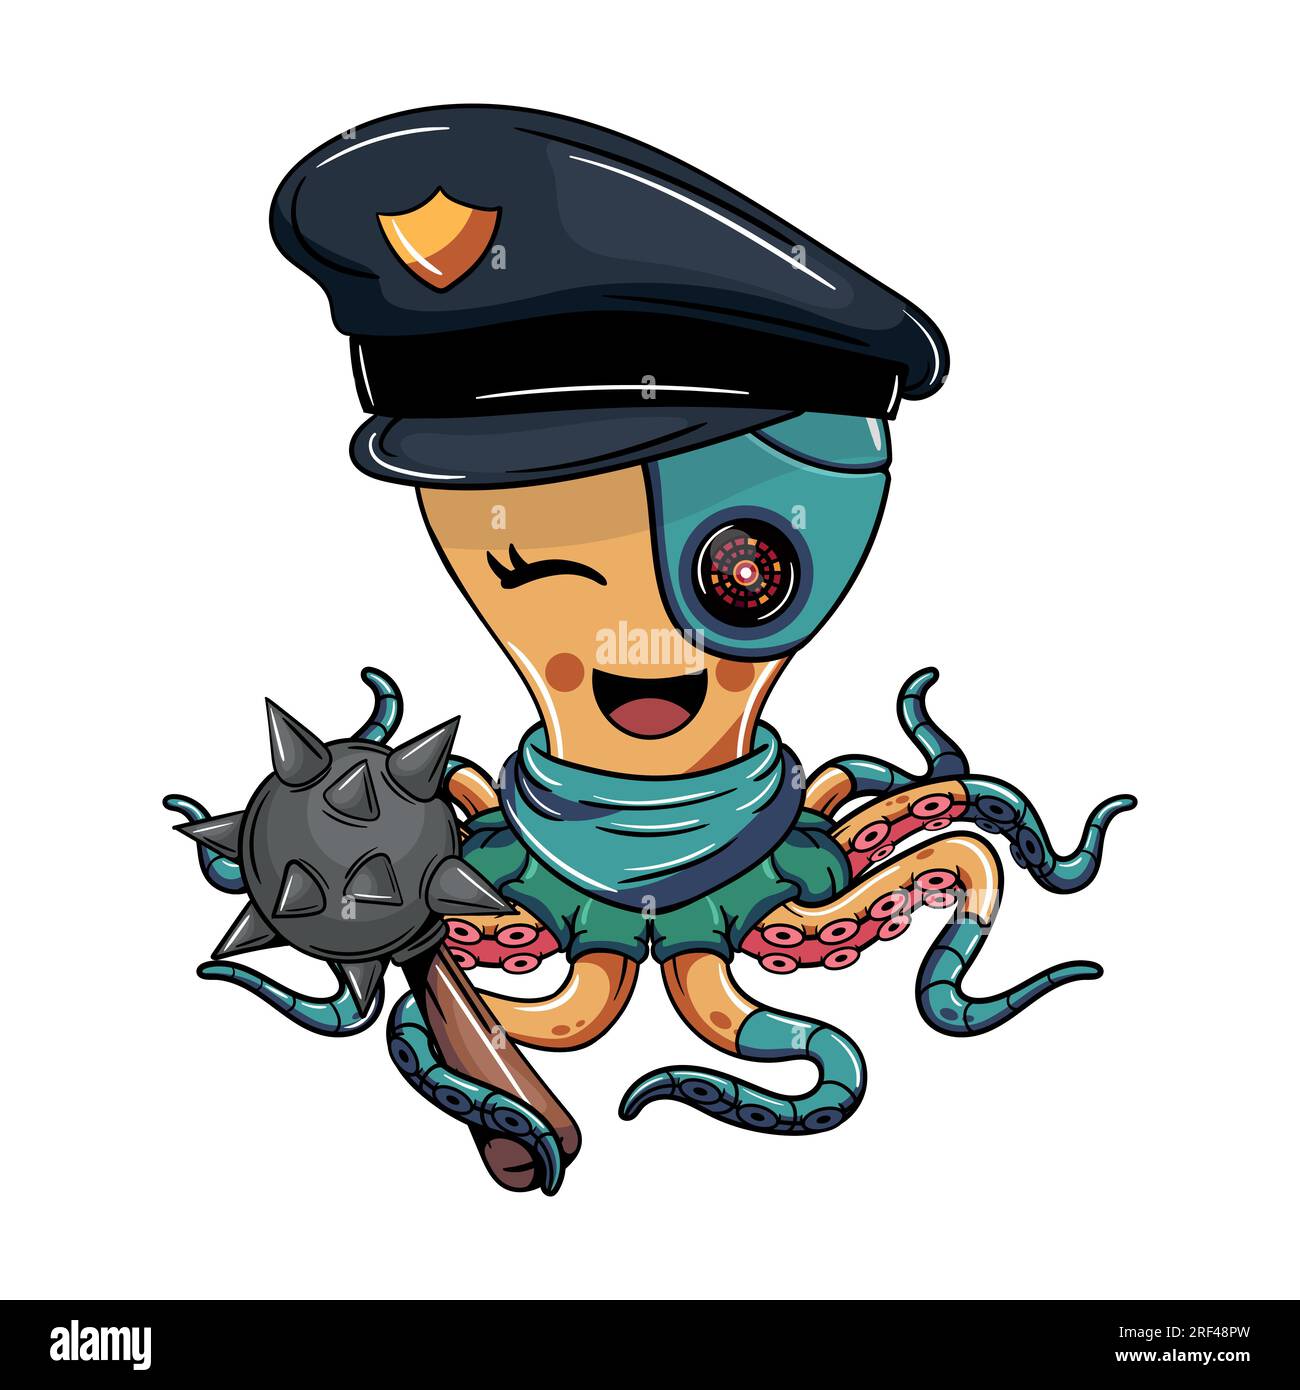 Personnage de bande dessinée Octopus cyborg policier avec une masse de guerre. Illustration pour la fantaisie, la science-fiction et la bande dessinée d'aventure Illustration de Vecteur